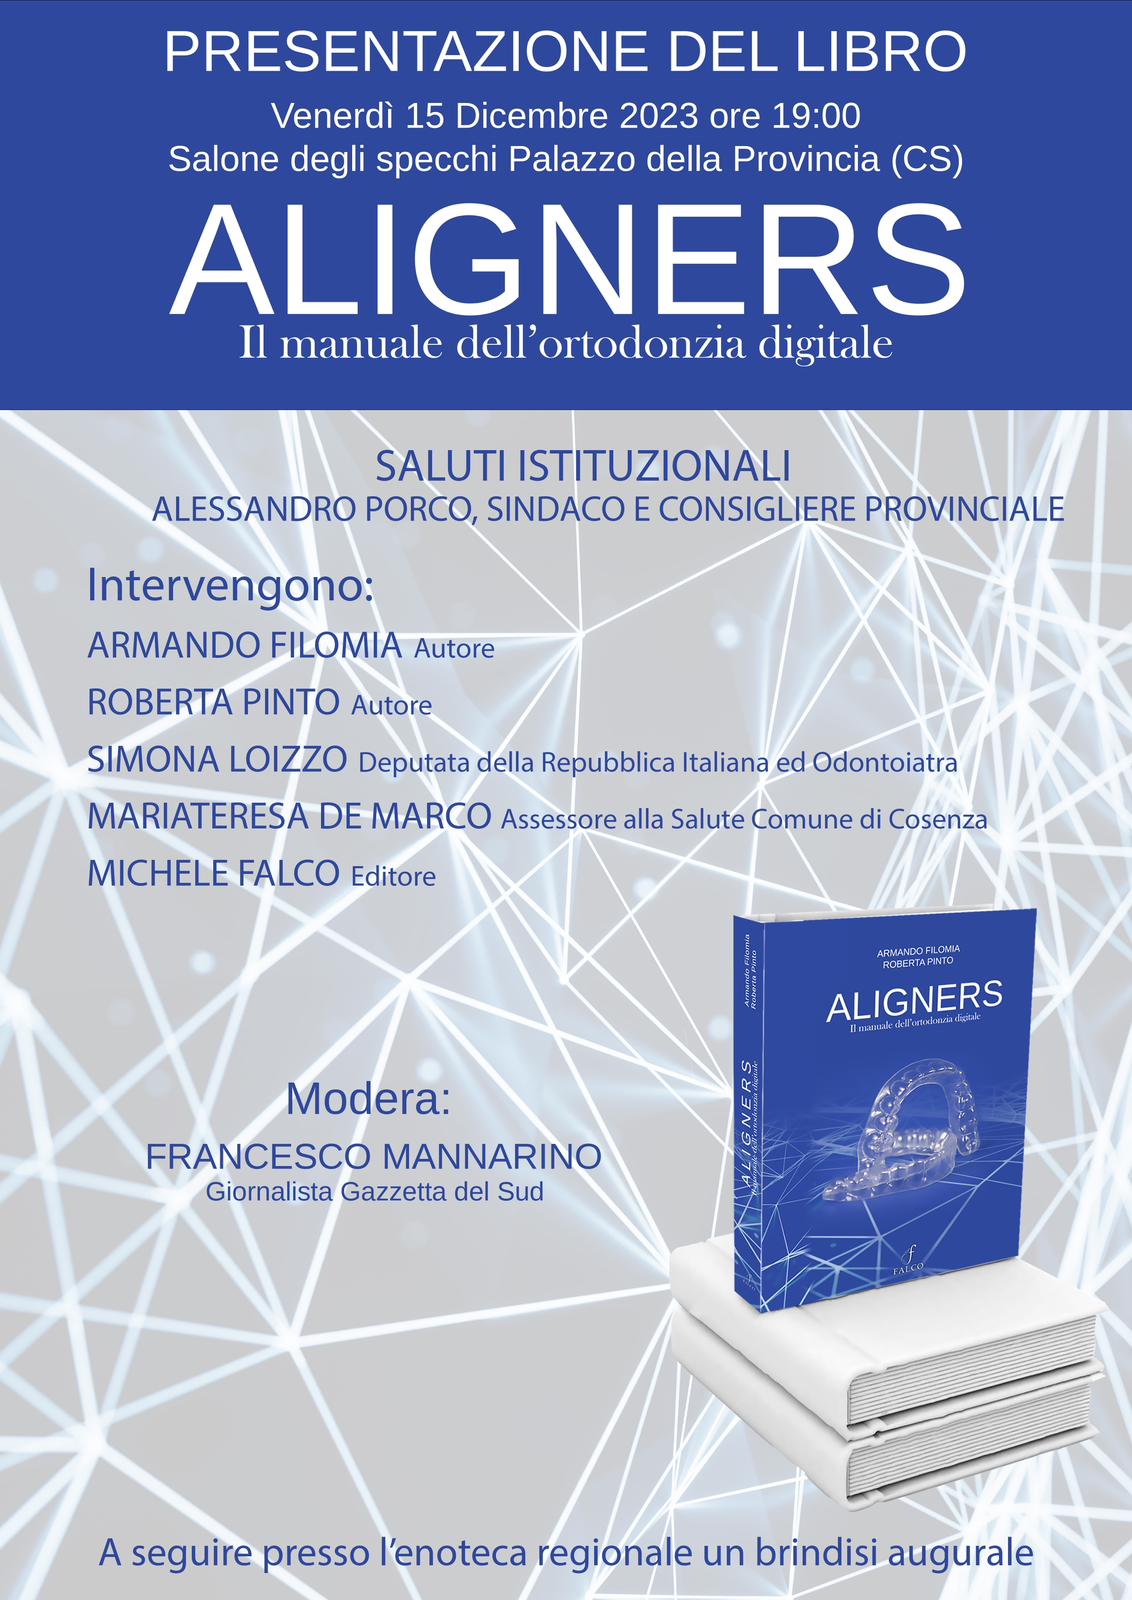 Presentazione del Libro Aligners. Il Manuale dell'ortodonzia digitale Dr. Filomia e Dr.ssa Pinto